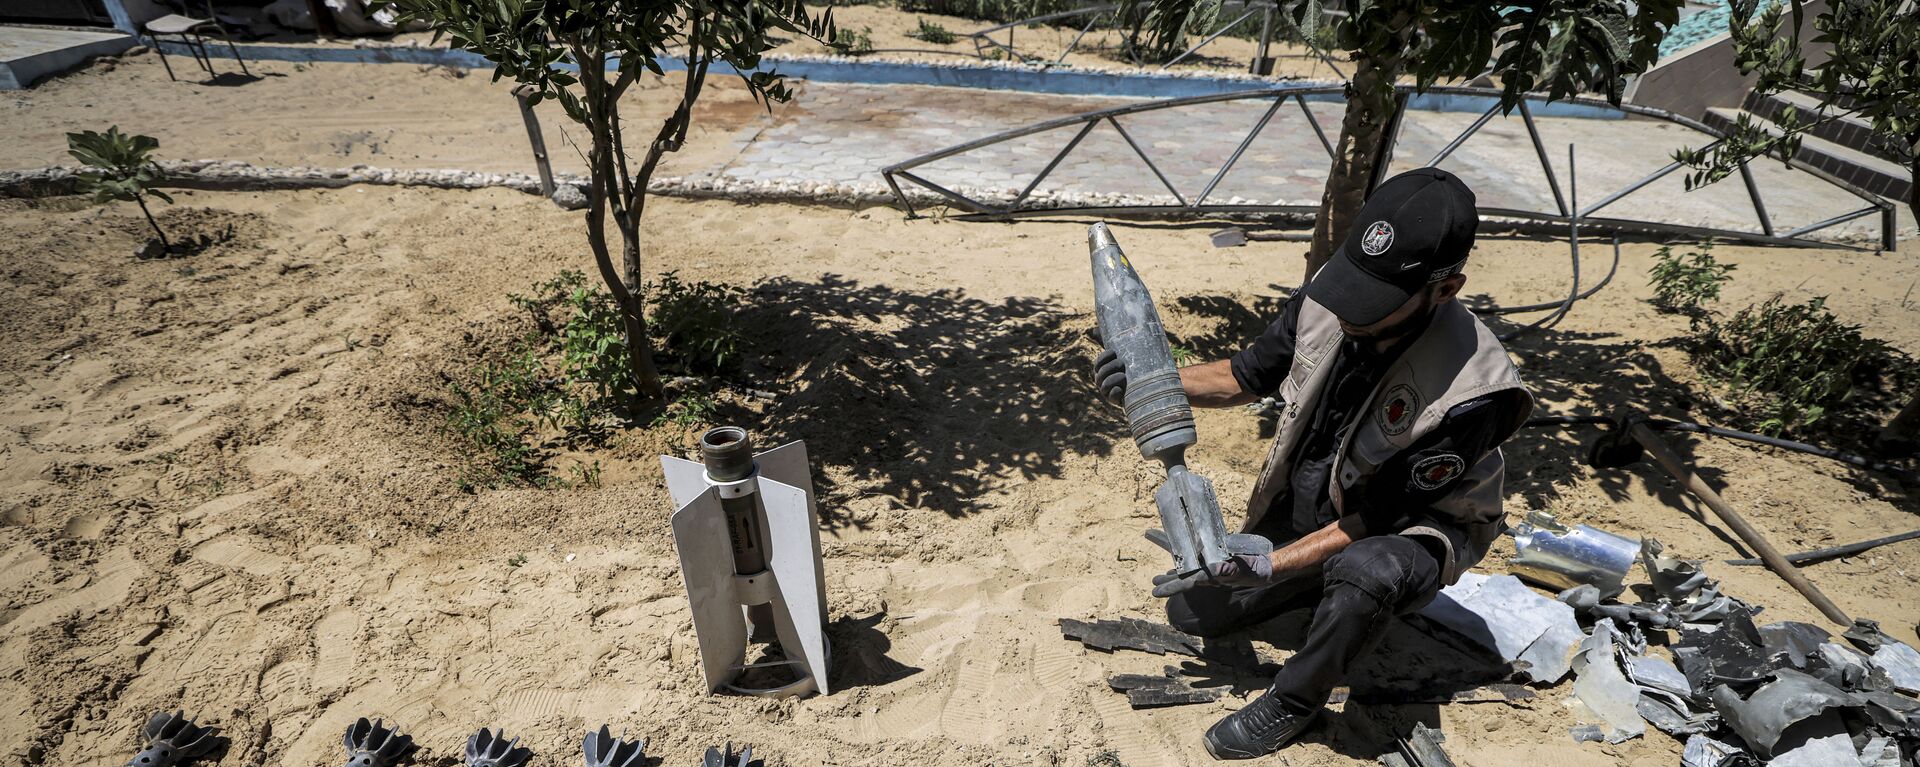 خبراء المتفجرات من حماس يقومون بإزالة قنابل وصواريخ قوات الطيران الحربي التي لم تنفجر في خان يونس، بعد تبادل إطلاق النار بين قطاع غزة وإسرائيل في مايو الماضي، 5 يونيو 2021 - سبوتنيك عربي, 1920, 17.02.2022